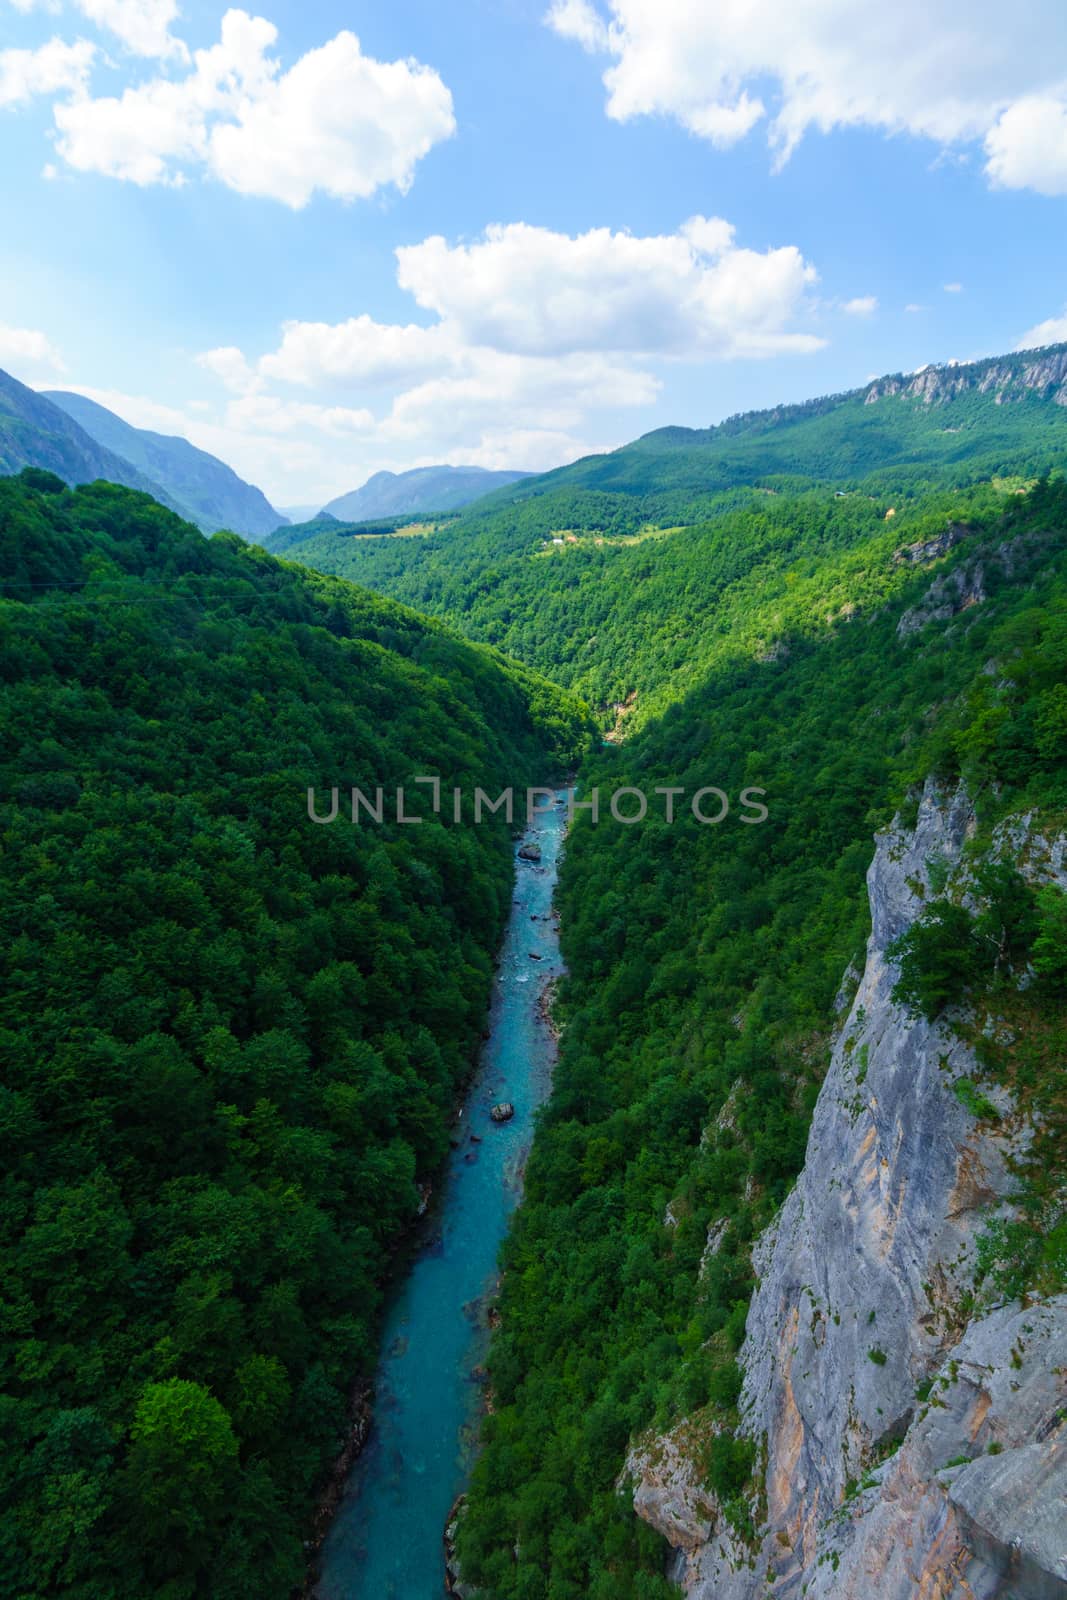 Tara River and Canyon by RnDmS